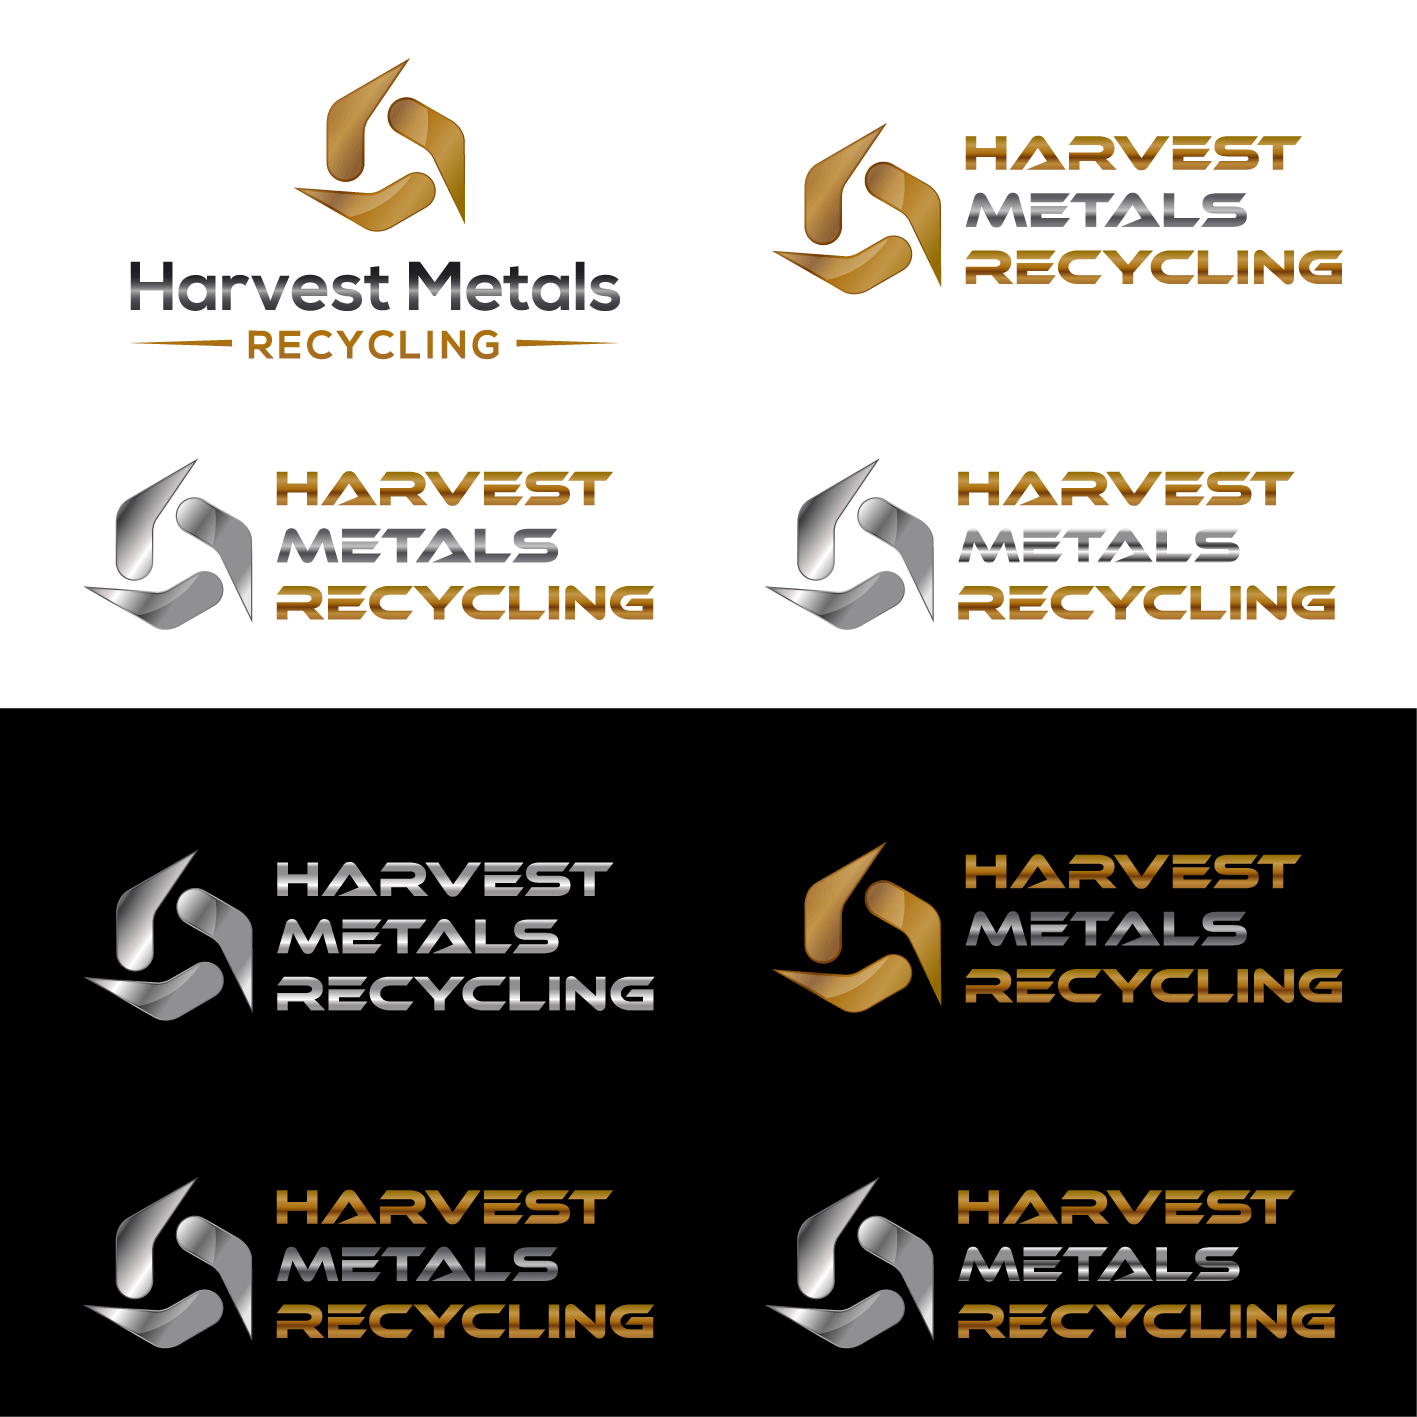 Harvest Company Logo - Elegant, Playful, Recycling Logo Design for Harvest Metals